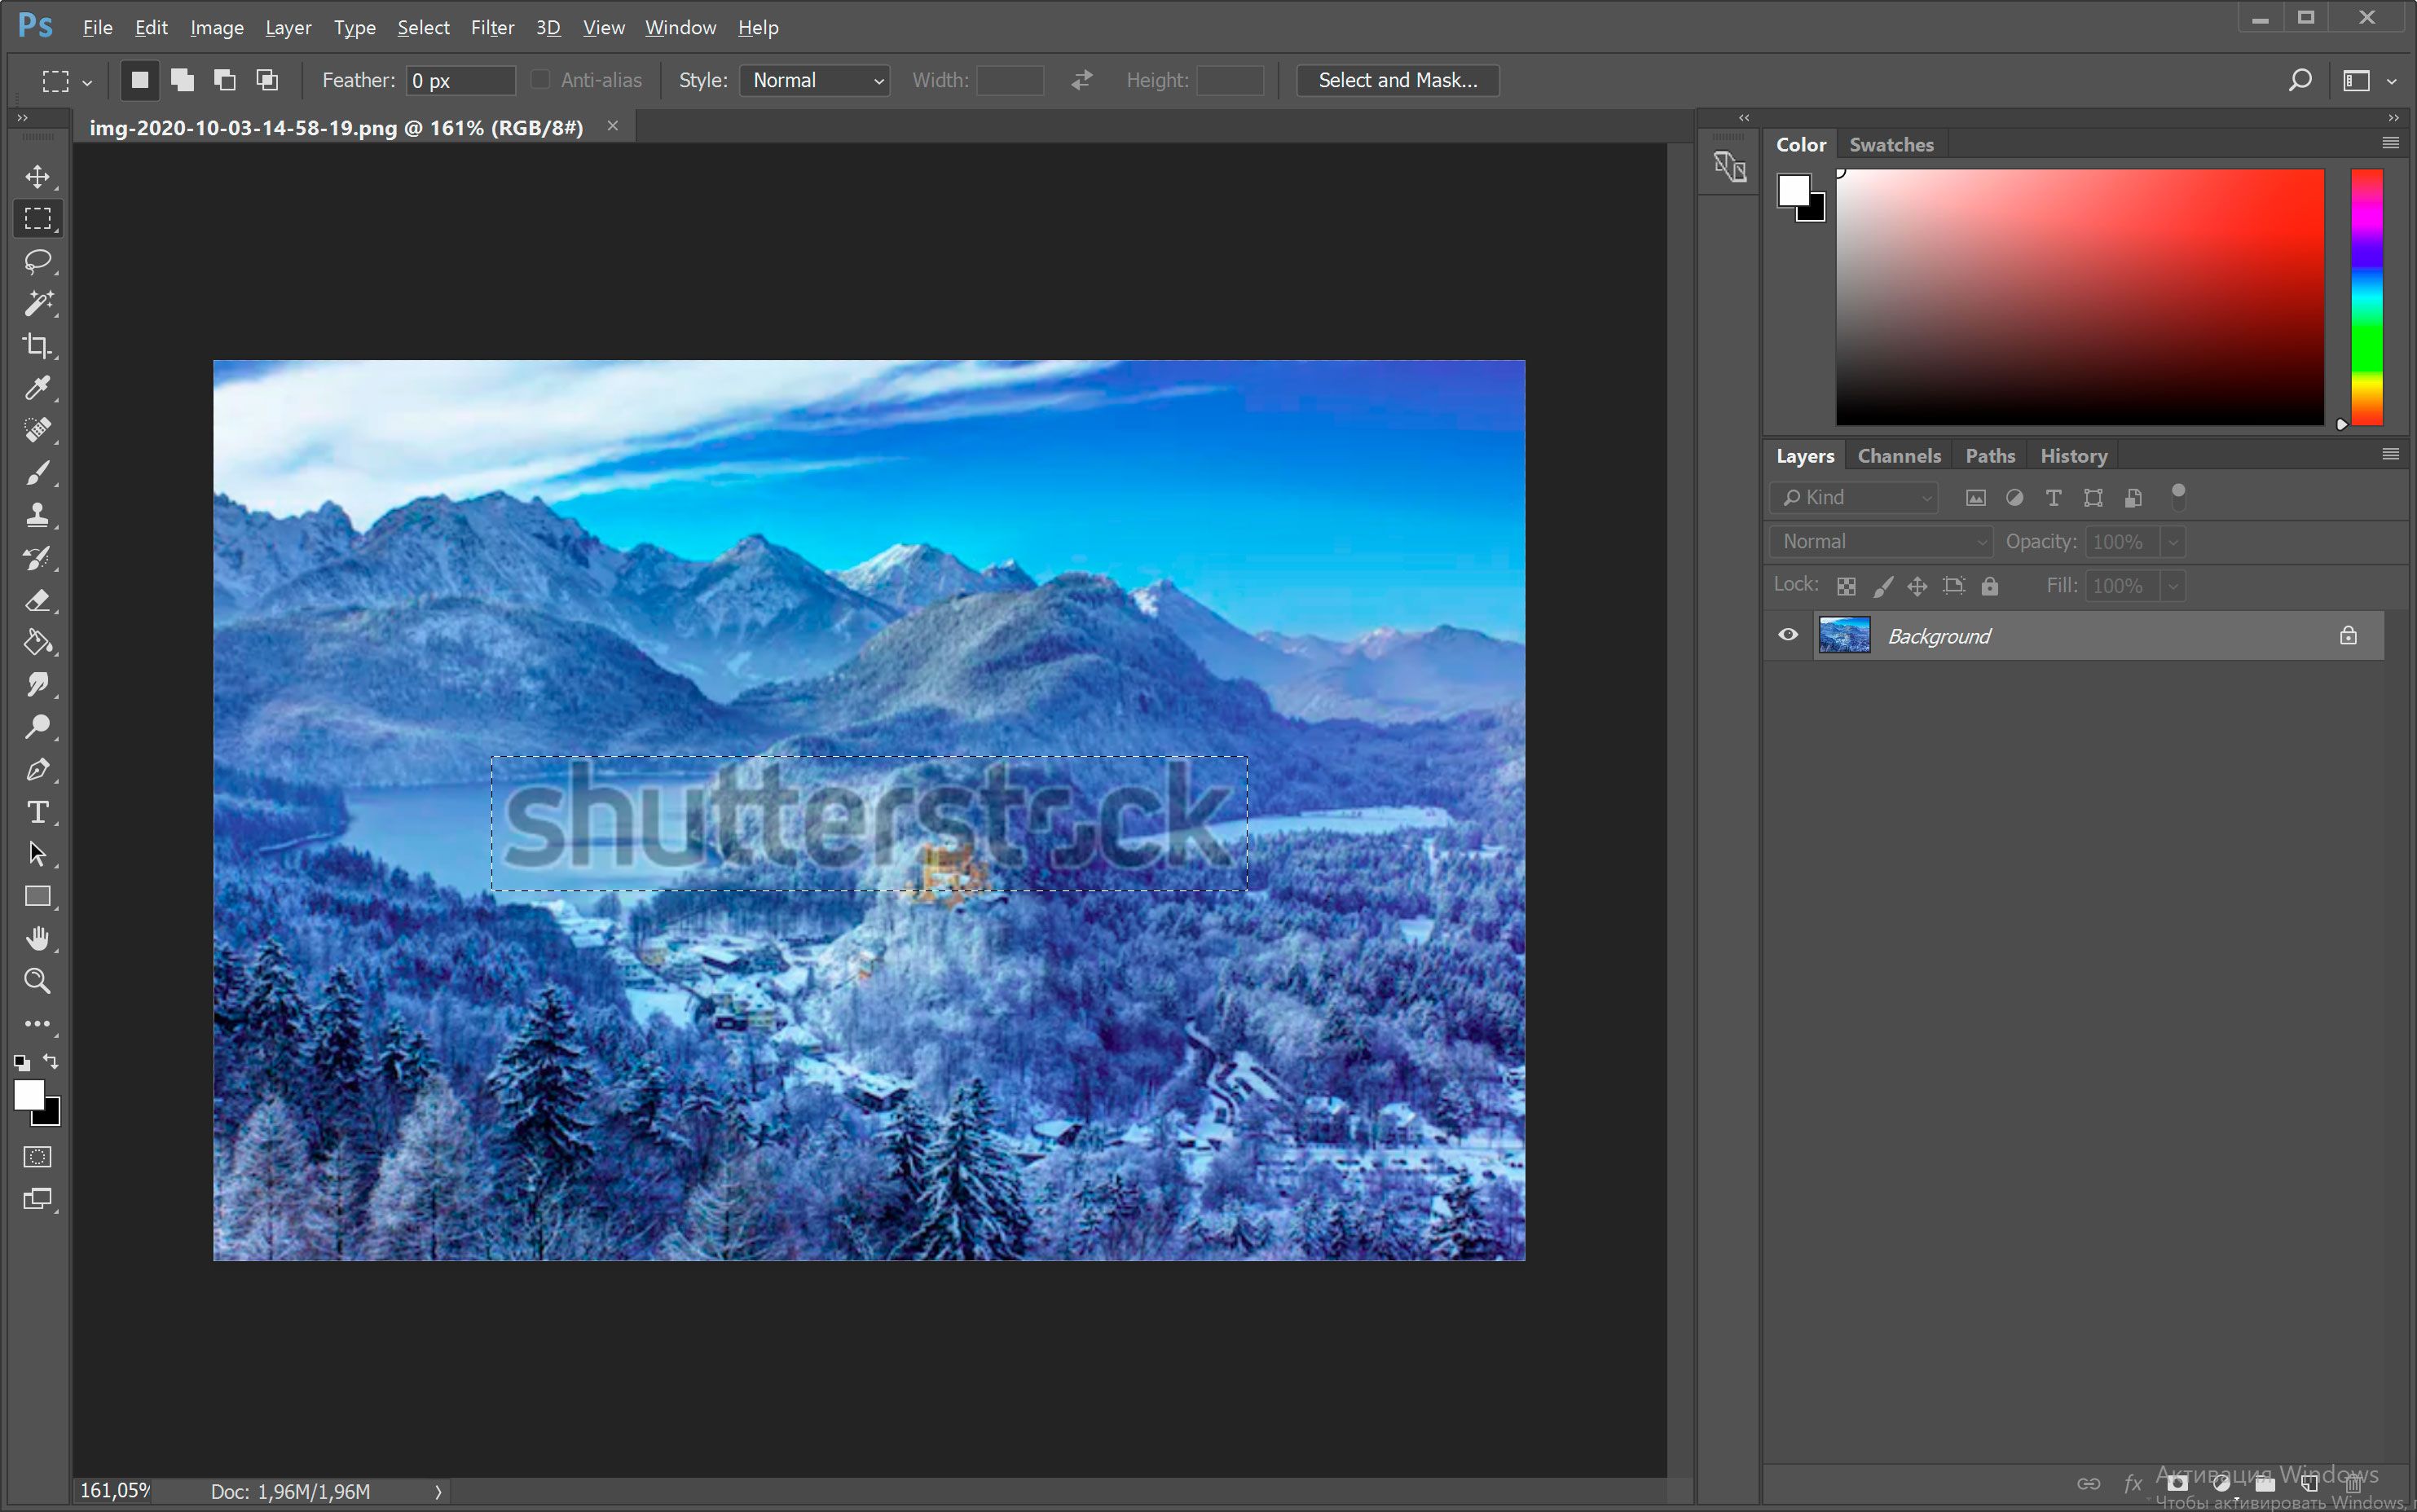 Åpne bildet med Shutterstock-vannmerket i Photoshop..